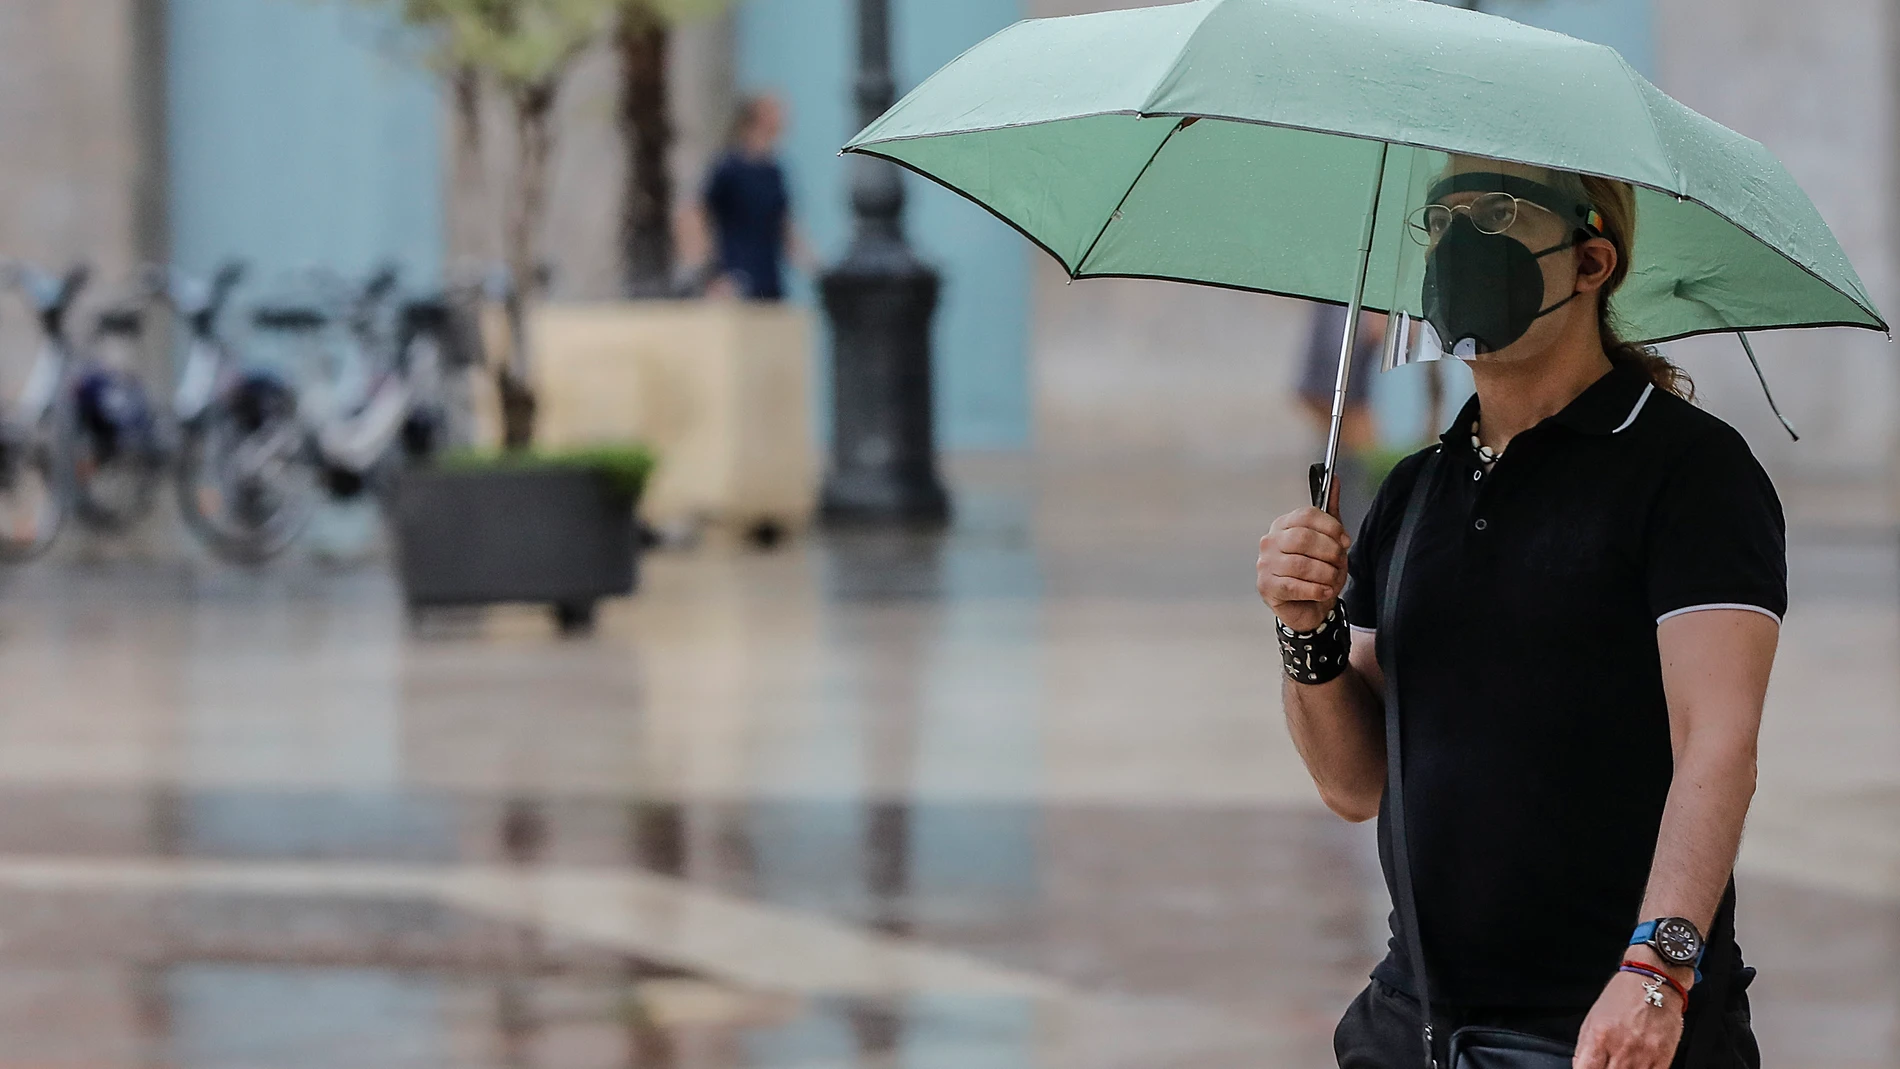 Una persona sostiene un paraguas mientras llueve, a 26 de julio de 2021, en Valencia